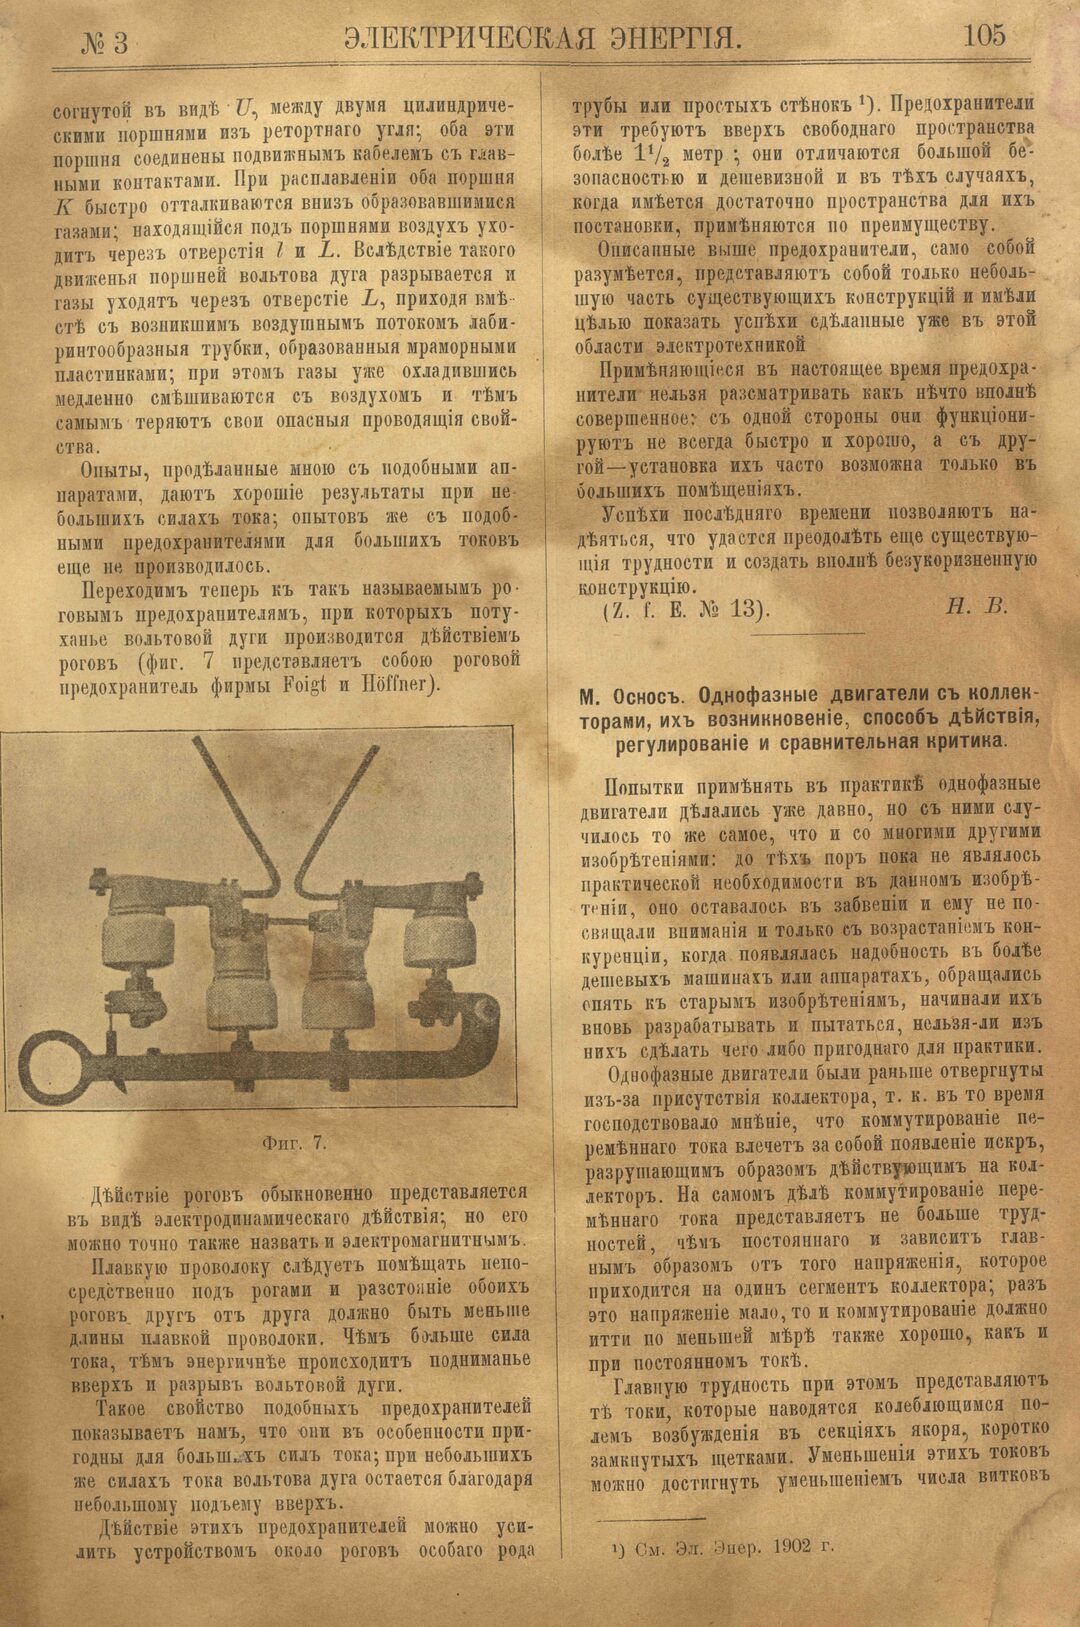 Рис. 1. Журнал Электрическая Энергiя, 3 номер, март, 1904 года, страница 105